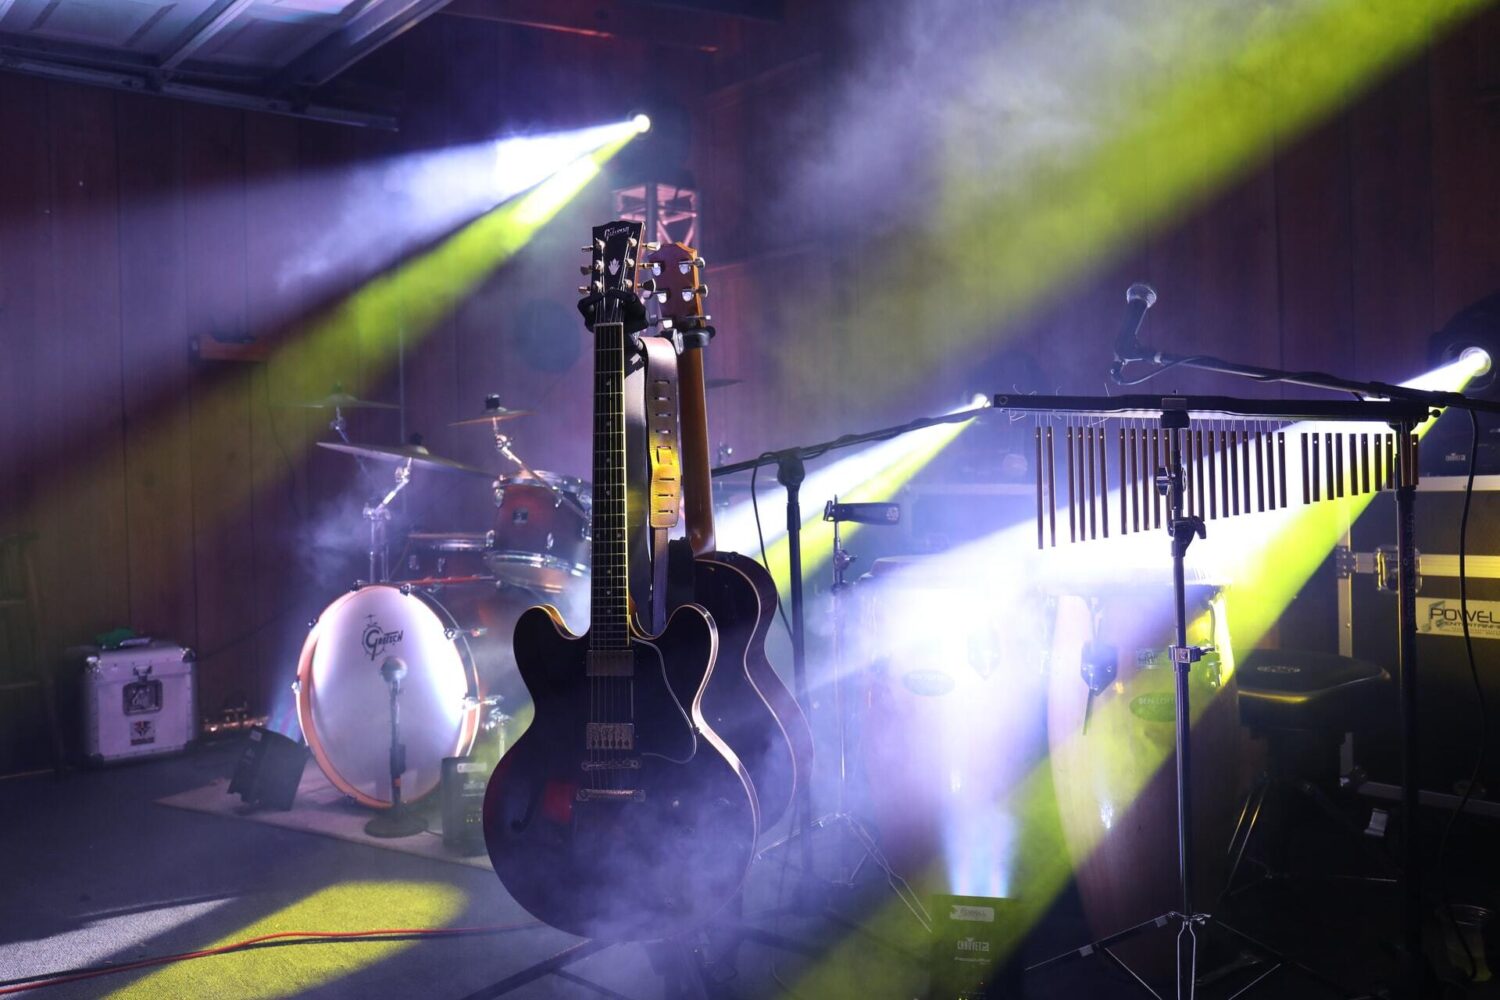 Guitars on stage